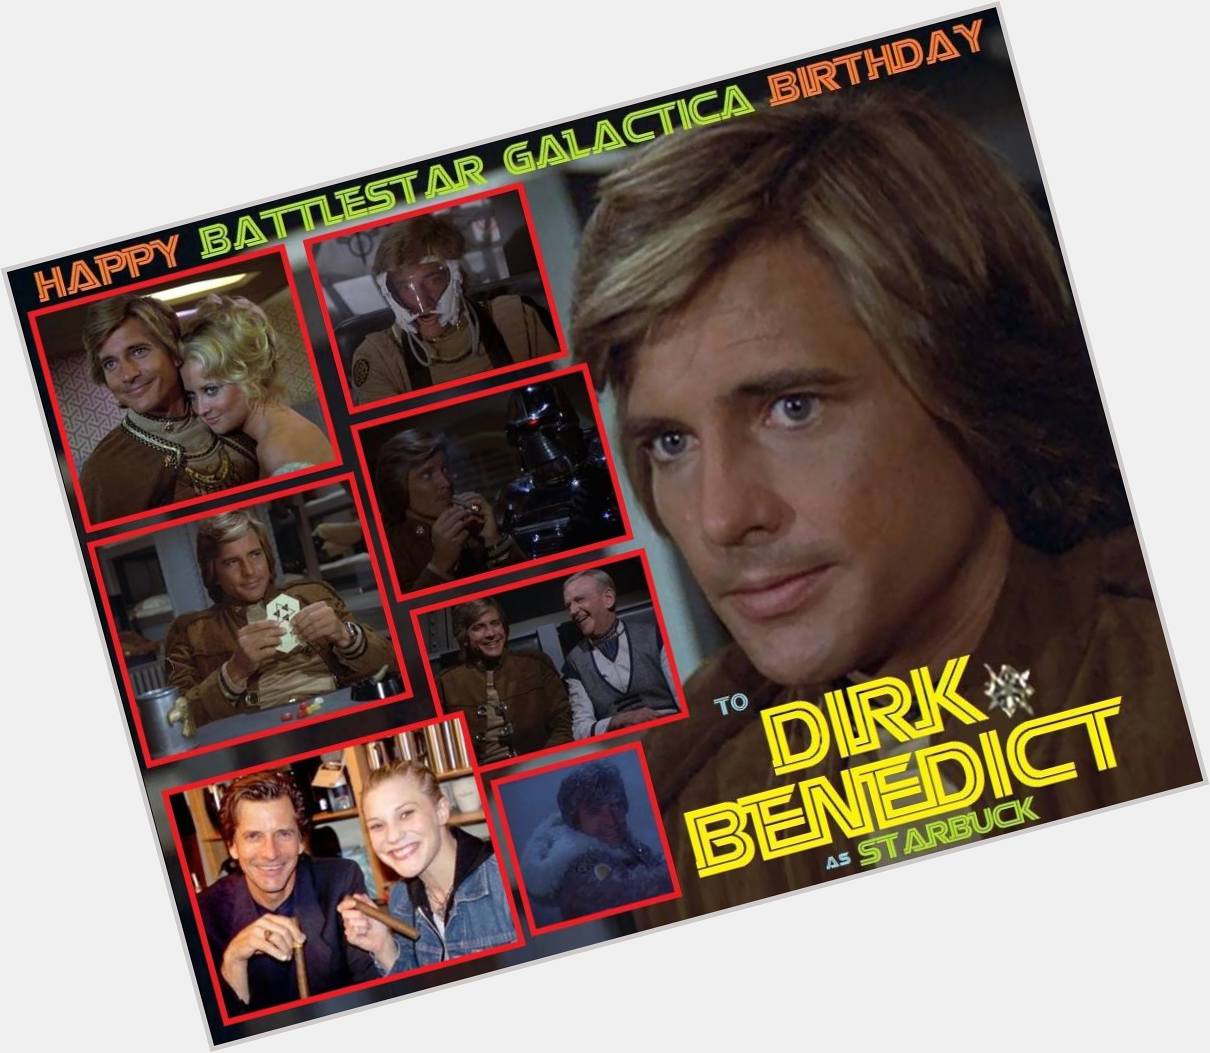 3-01 Happy birthday to Dirk Benedict.  